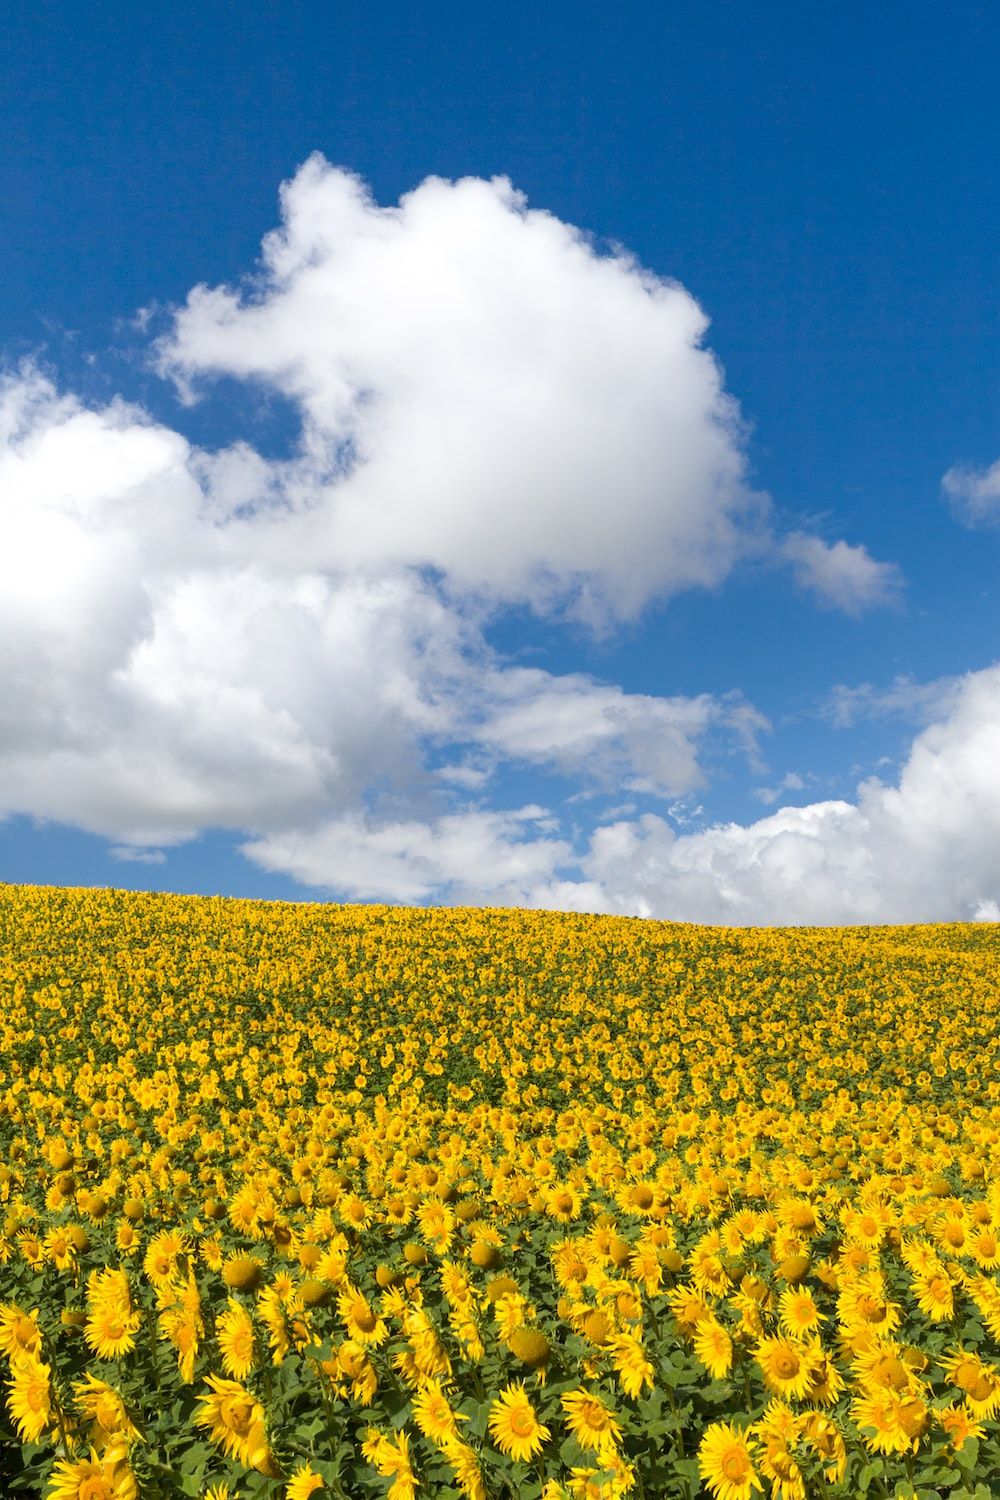  Landwirtschaft Hintergrundbild 1000x1500. Foto zum Thema Ein Sonnenblumenfeld unter einem bewölkt blauen Himmel